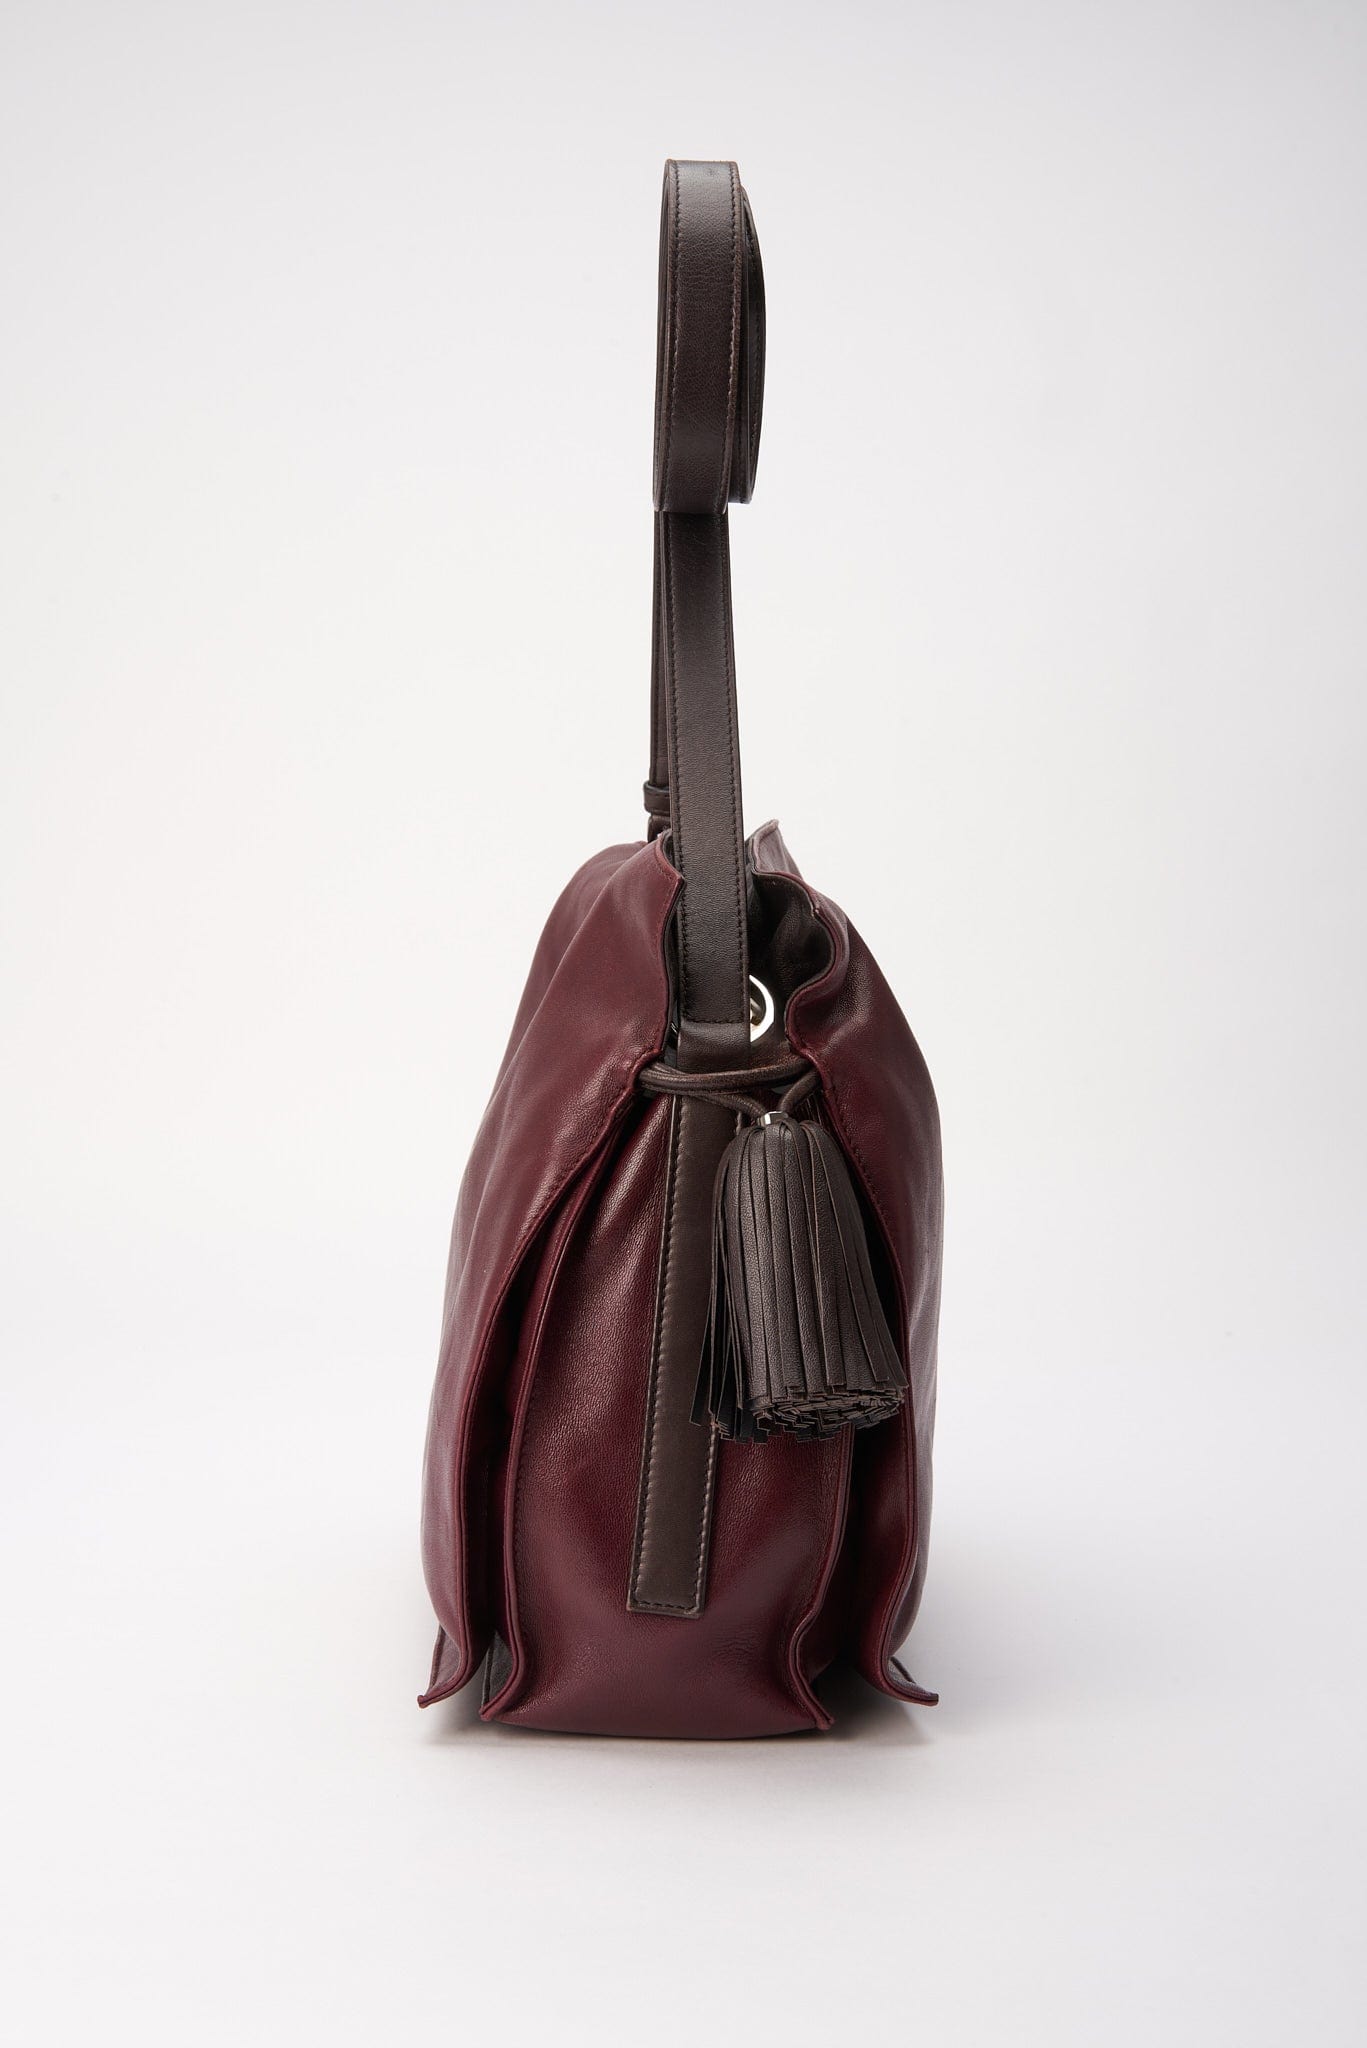 Vintage Loewe Leather Drawstring Tote Bag